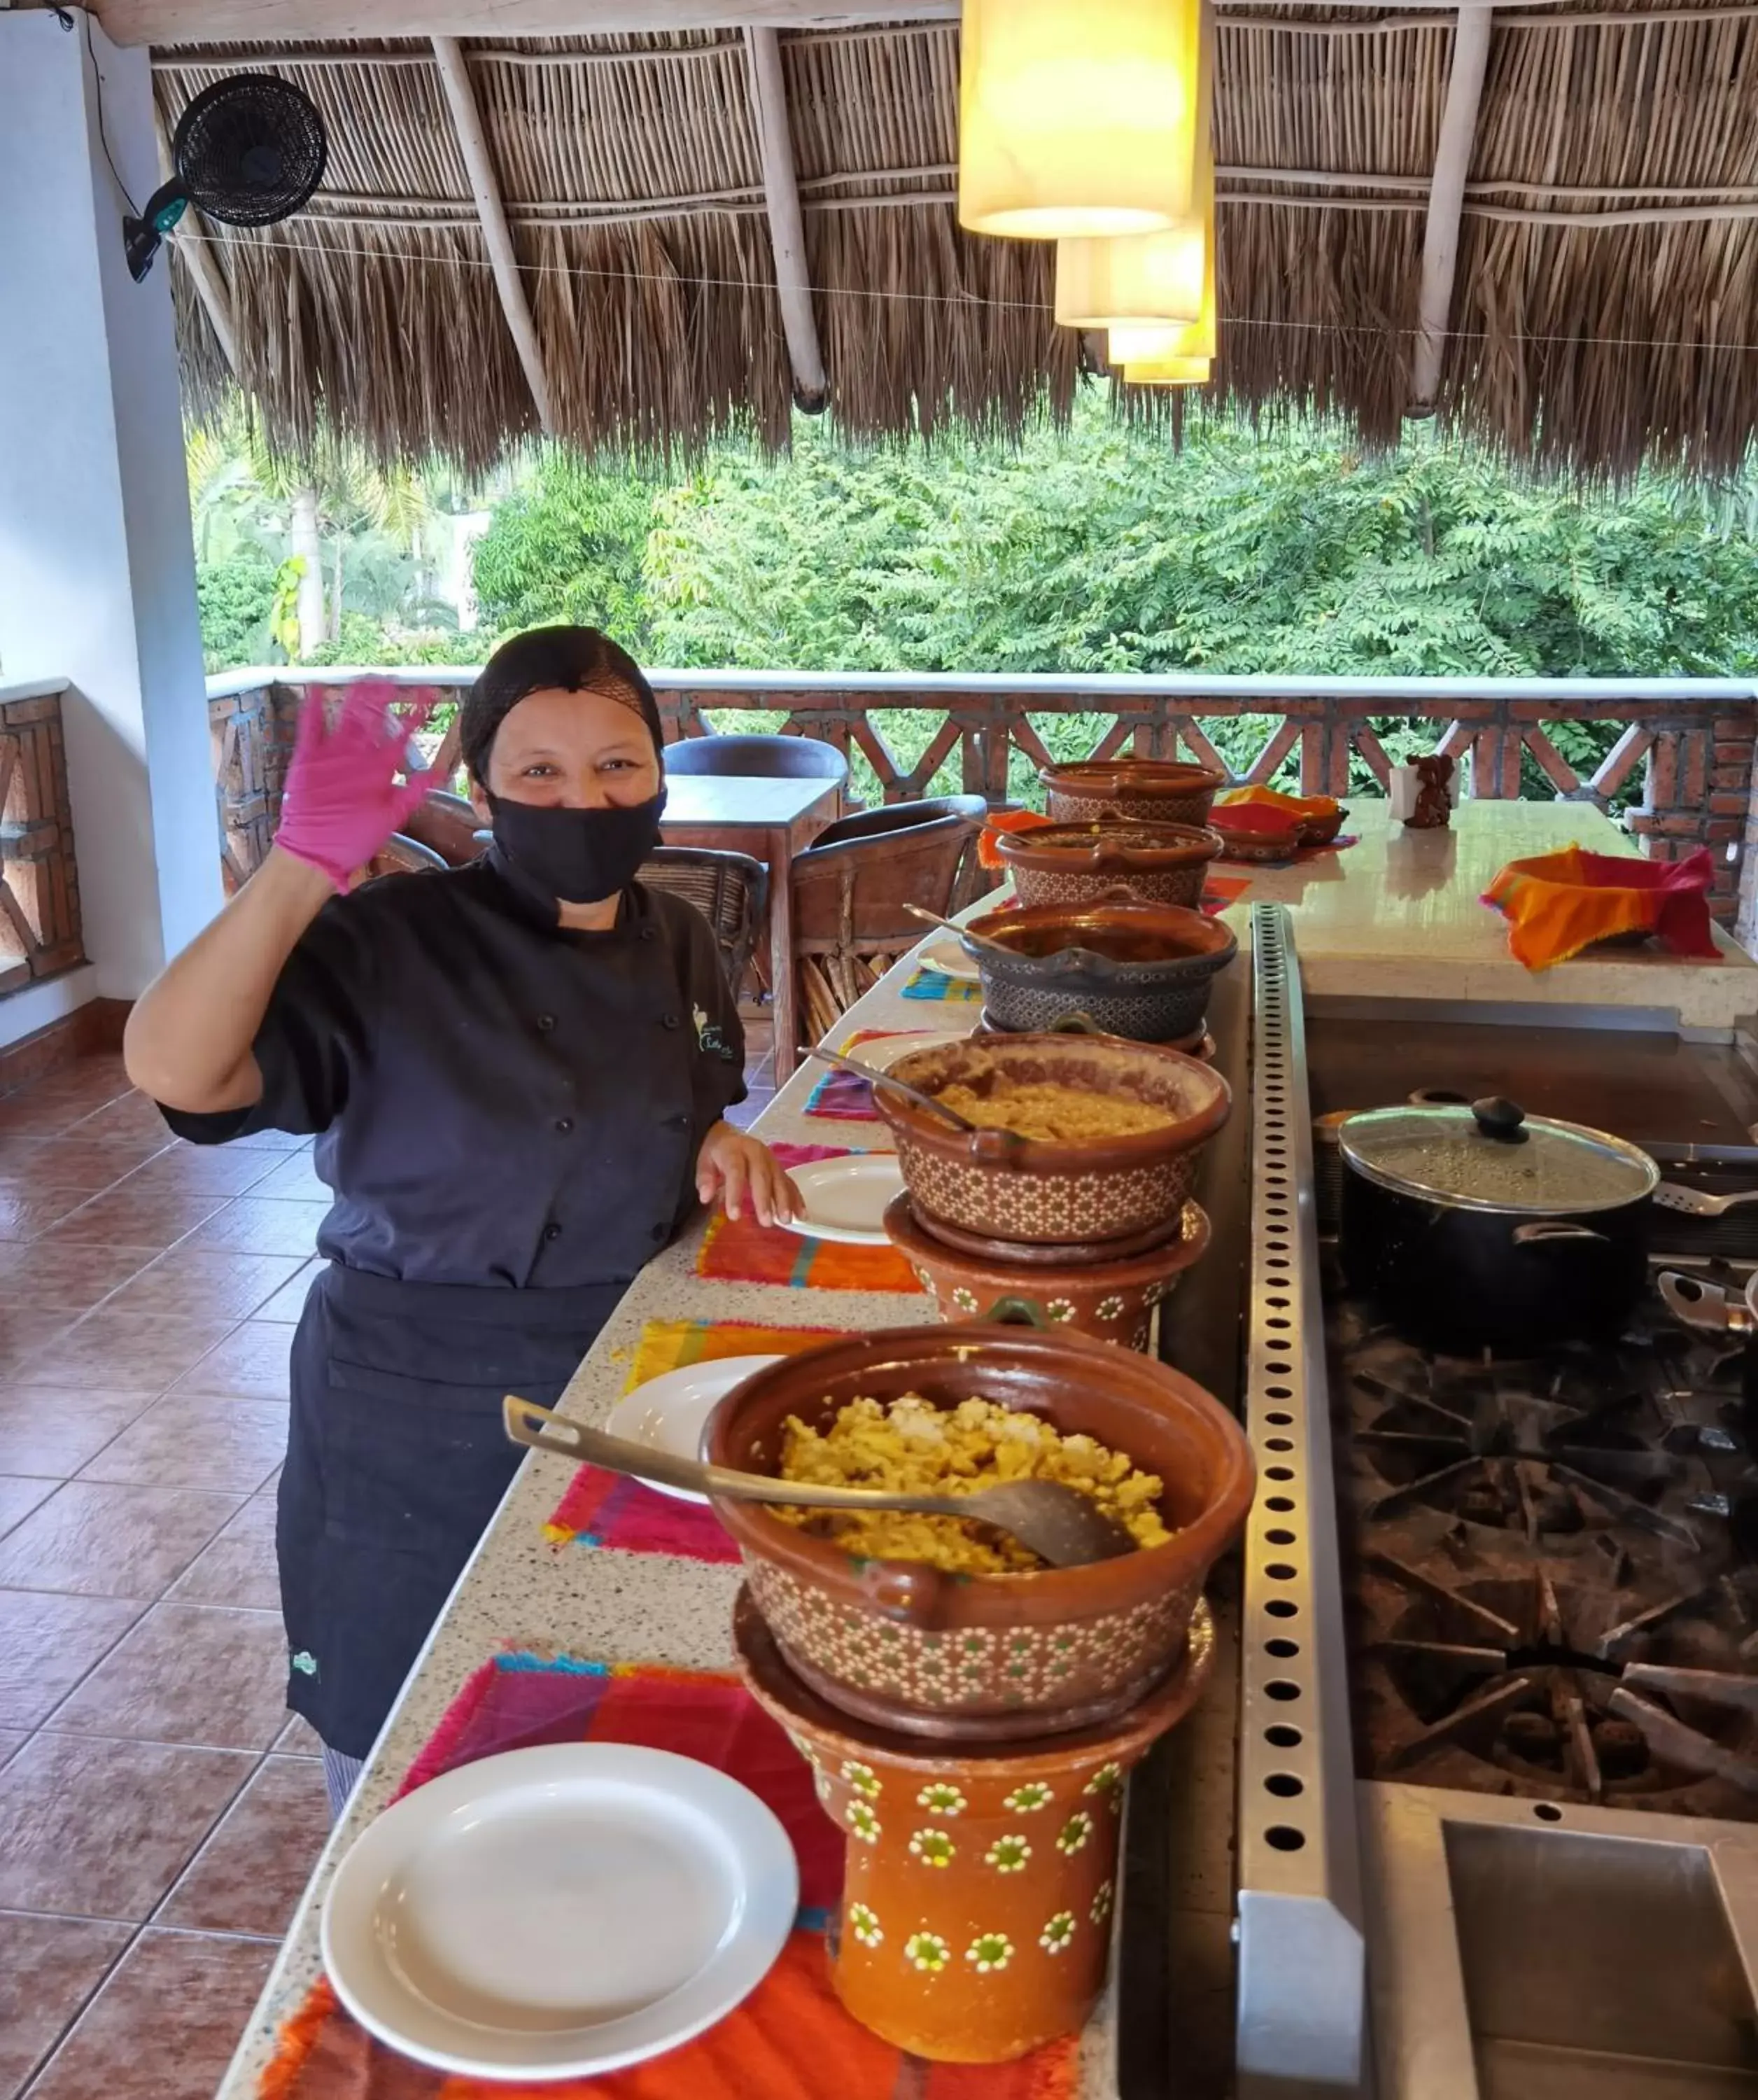 Restaurant/places to eat in Hotelito Los Sueños